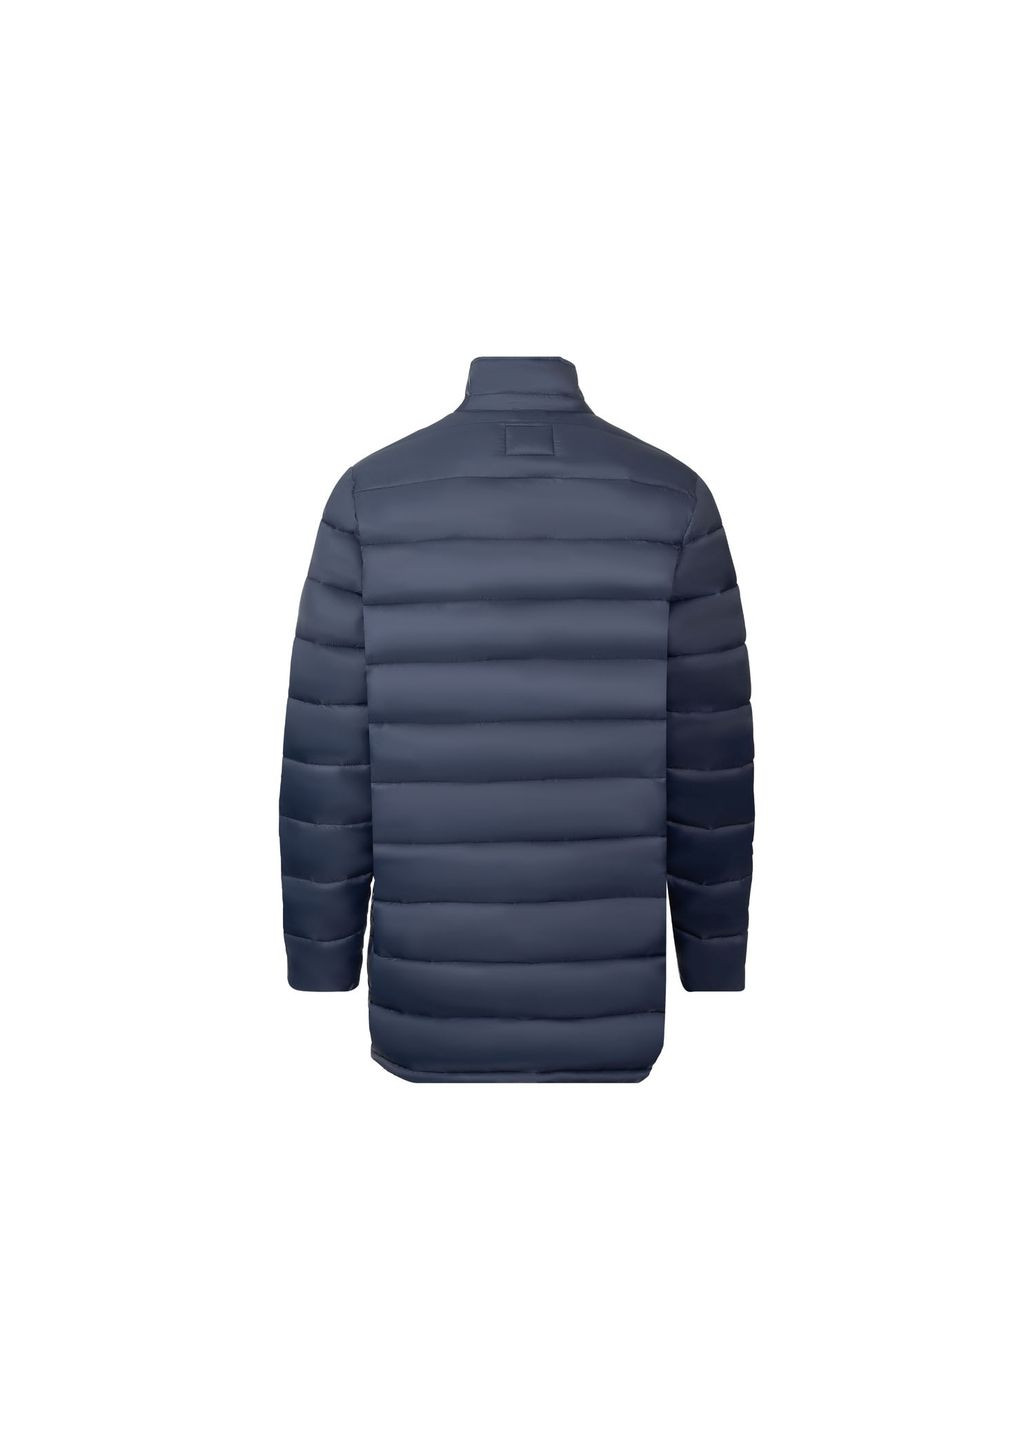 Темно-синяя демисезонная куртка демисезонная водоотталкивающая и ветрозащитная для мужчины 357762 Livergy